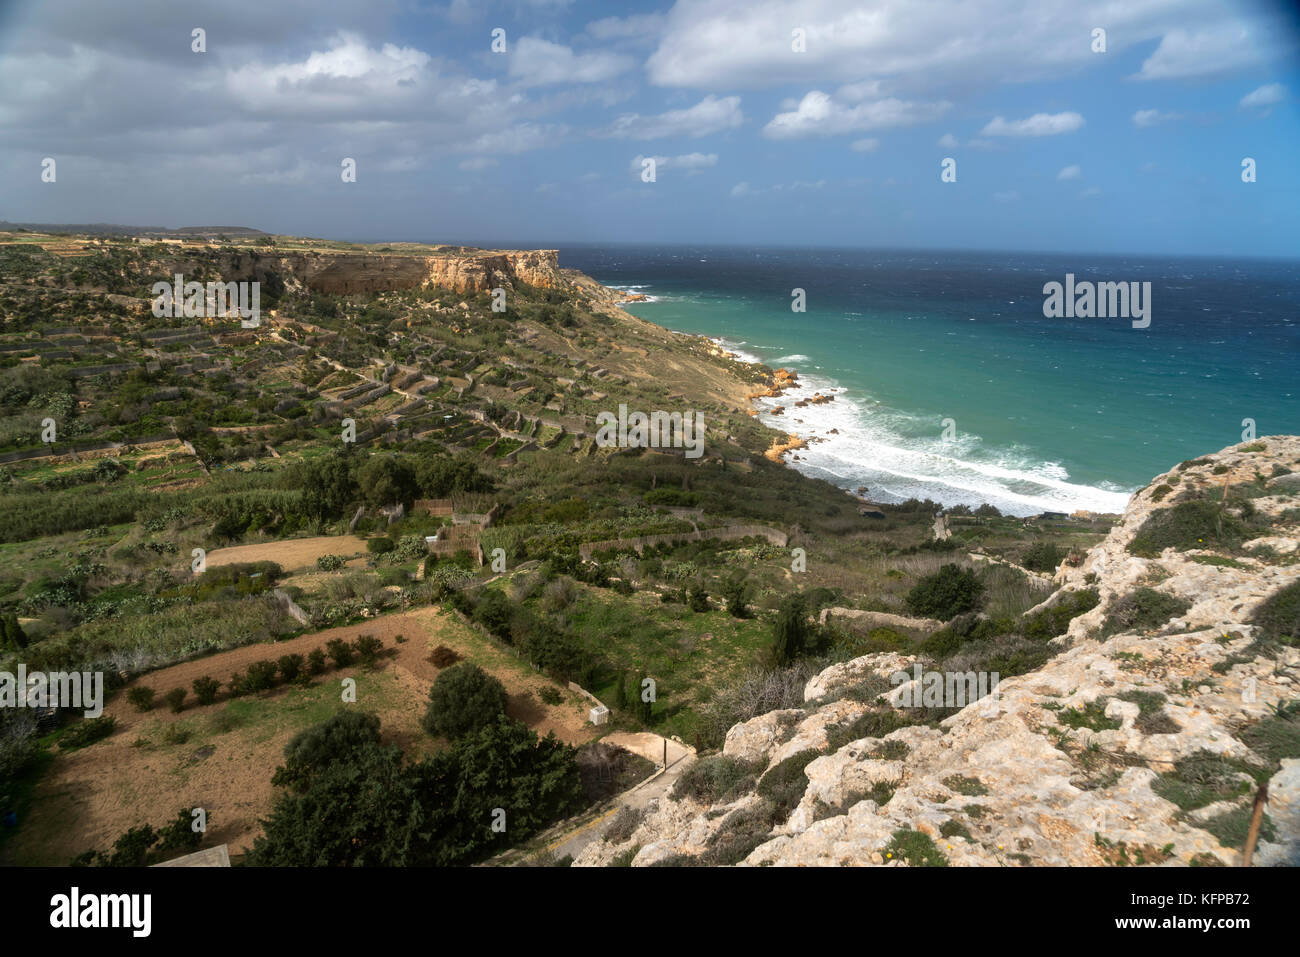 Bahía San Blas im nordosten der Insel gozo, malta | playa rocosa de Bahía San Blas, nororiental en Gozo, Malta Foto de stock